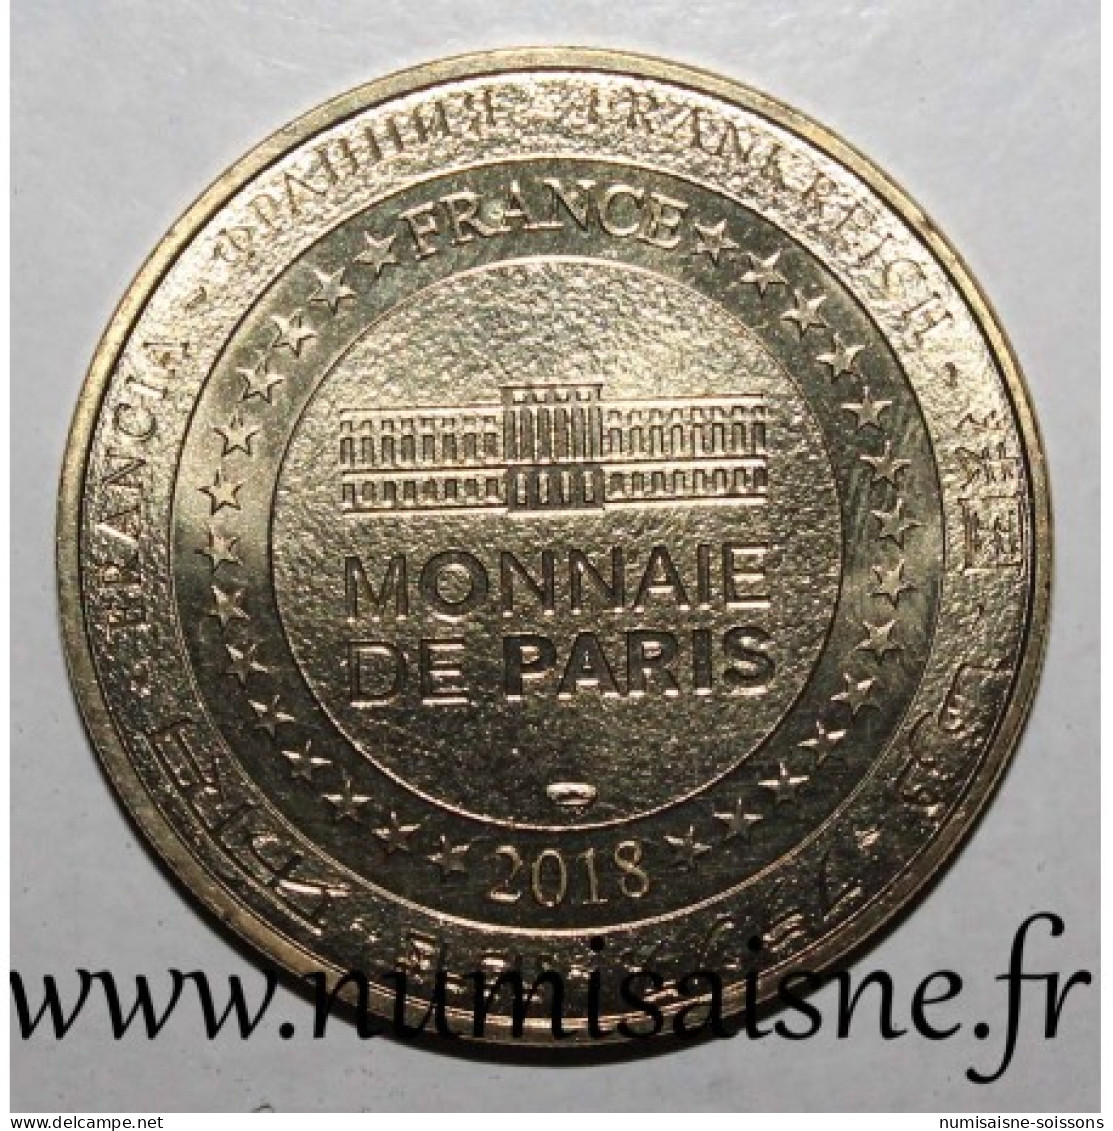 77 - MARNE LA VALLÉE - DISNEYLAND RESORT PARIS - Mickey - Monnaie De Paris - 2018 - Ohne Datum